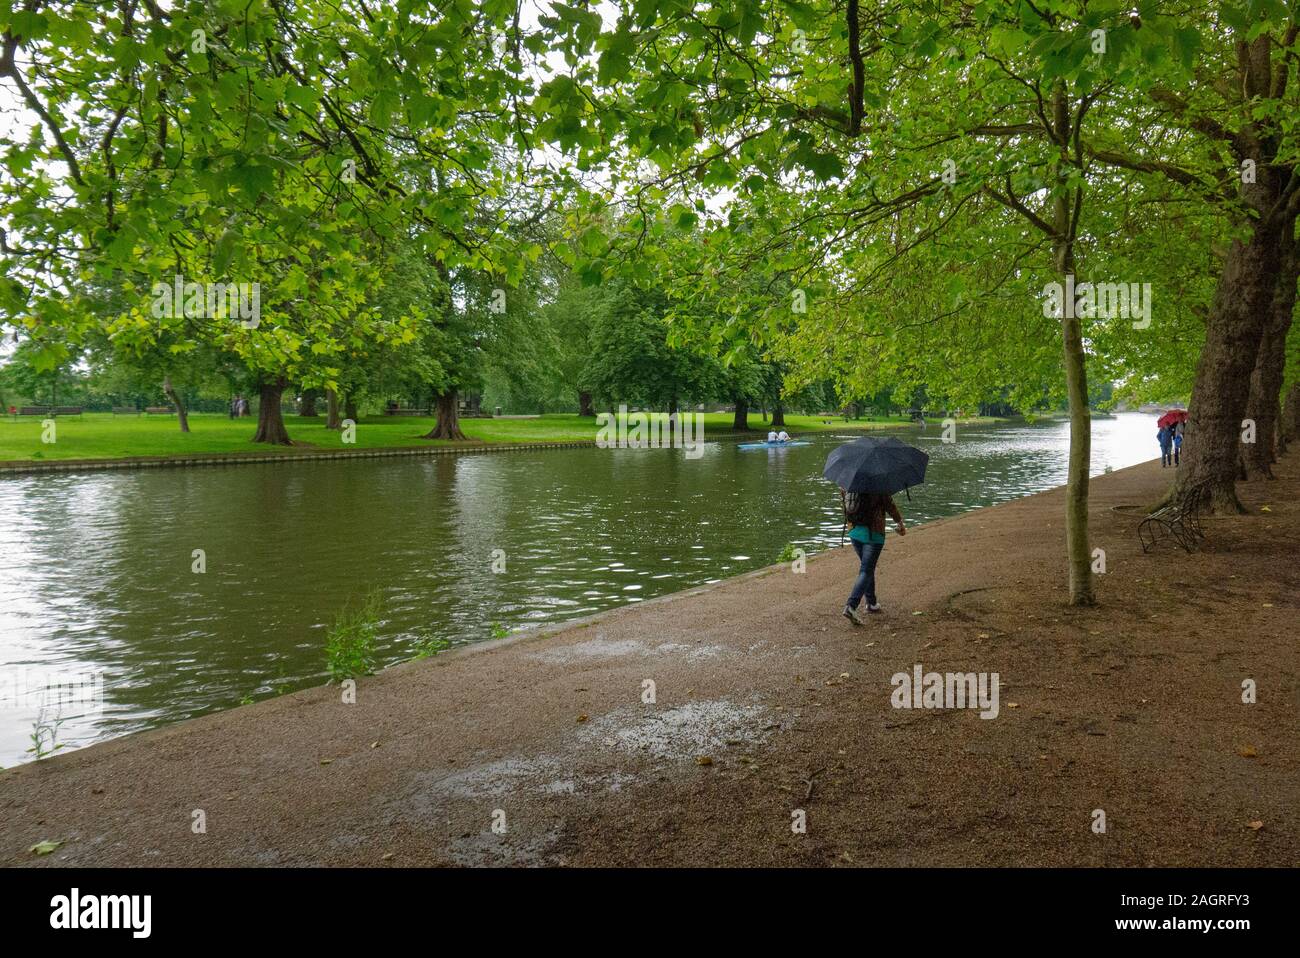 BEDFORD, Regno Unito - 21 Giugno 2012: Un pedestrain passeggiate sul bagnato estate giorno lungo gli argini del grande fiume Ouse in Bedford England Regno Unito Foto Stock